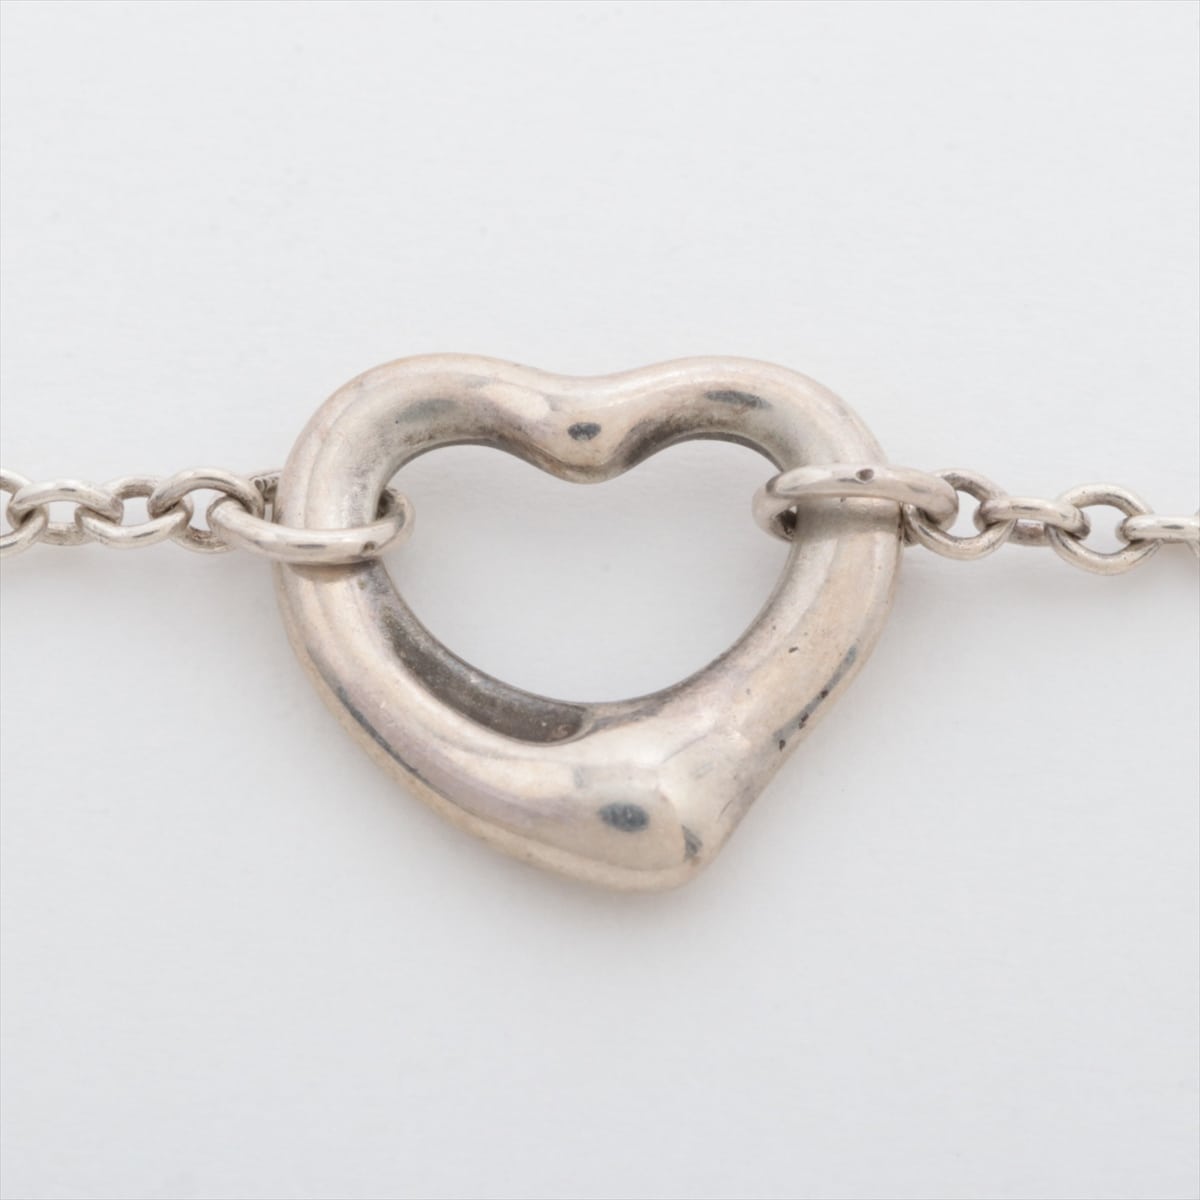 Tiffany Open Heart Bracelet 925 3.0g Silver